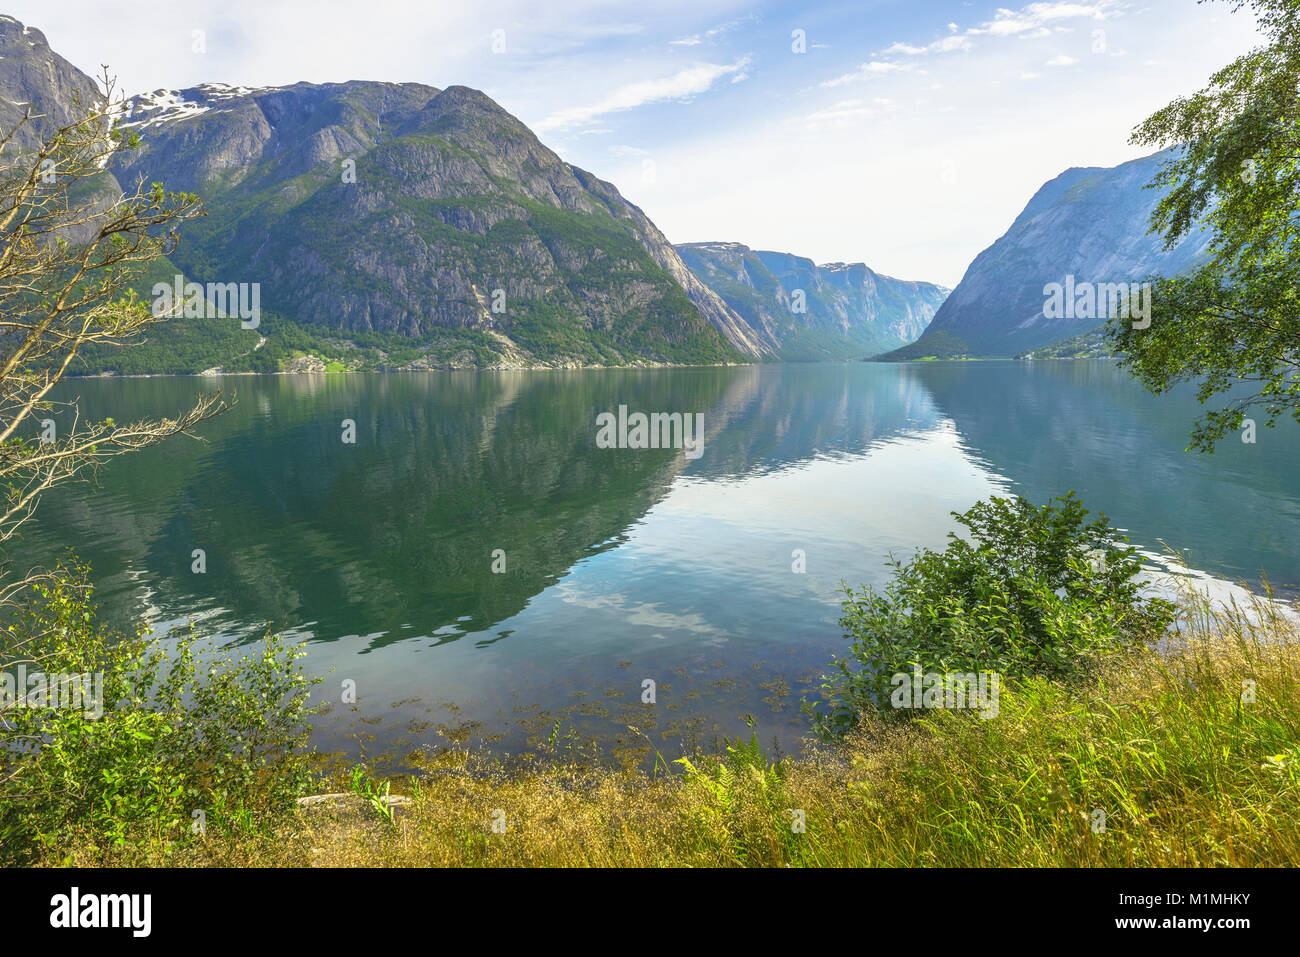 L'Eidfjorden réflexions avec près de village Eidfjord au bord de la mer sur la droite, Norvège, Scandinavie, fjord avec vue sur Simadalsfjorden Banque D'Images